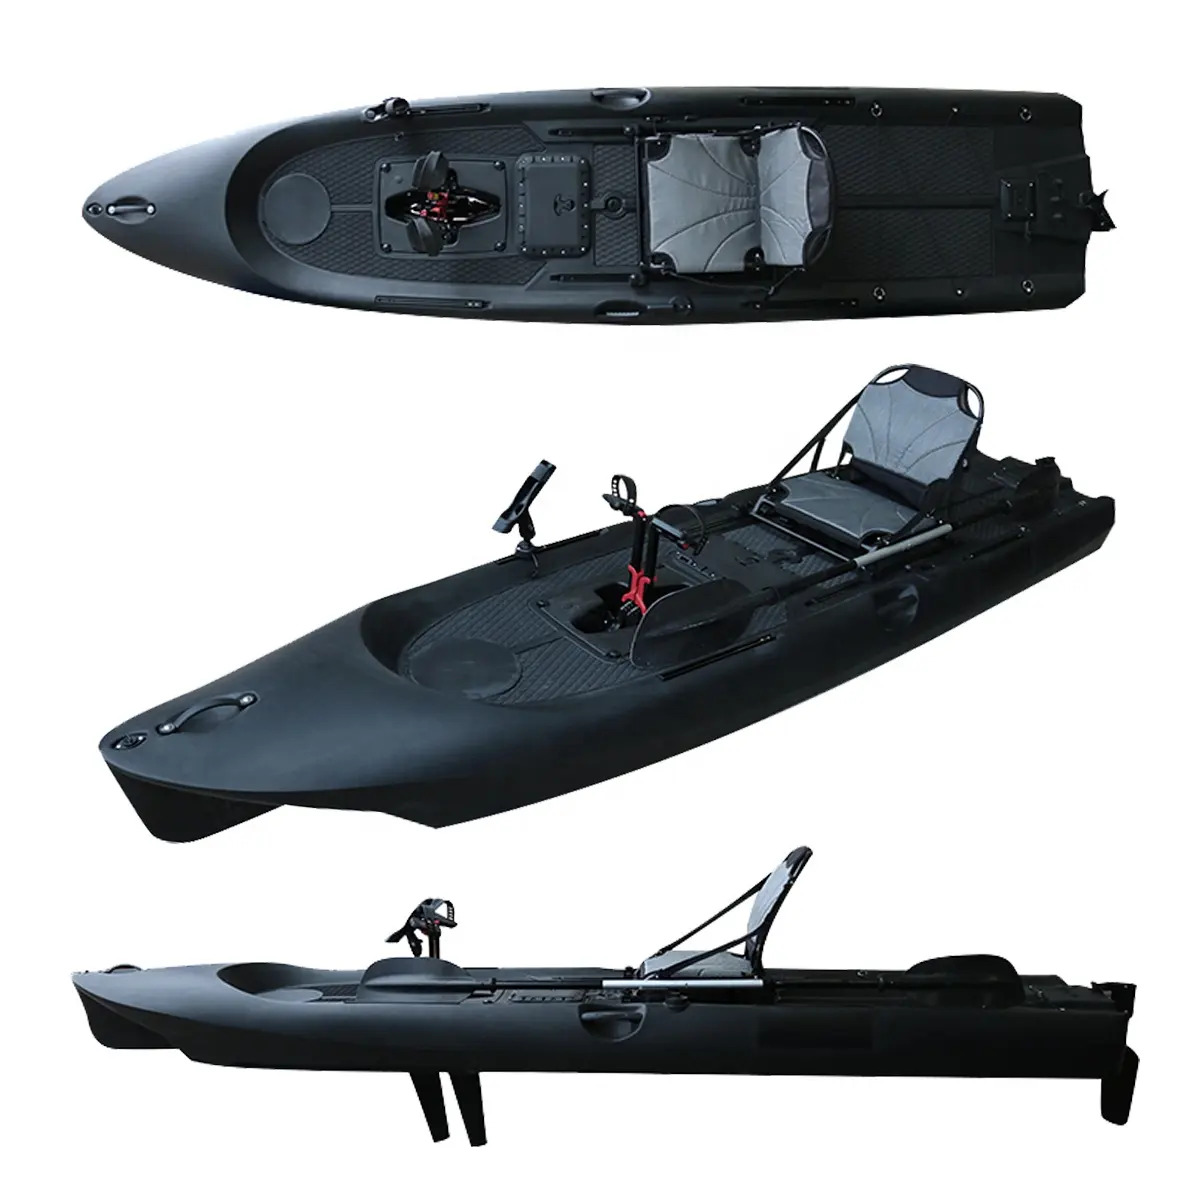 Pedalata SUP Kayak canoa piccola canoa a motore da pesca rete Ningbo 38 Kano in plastica nuovo stile 1 persona seduta in alto supporto per la pesca SUP PRO